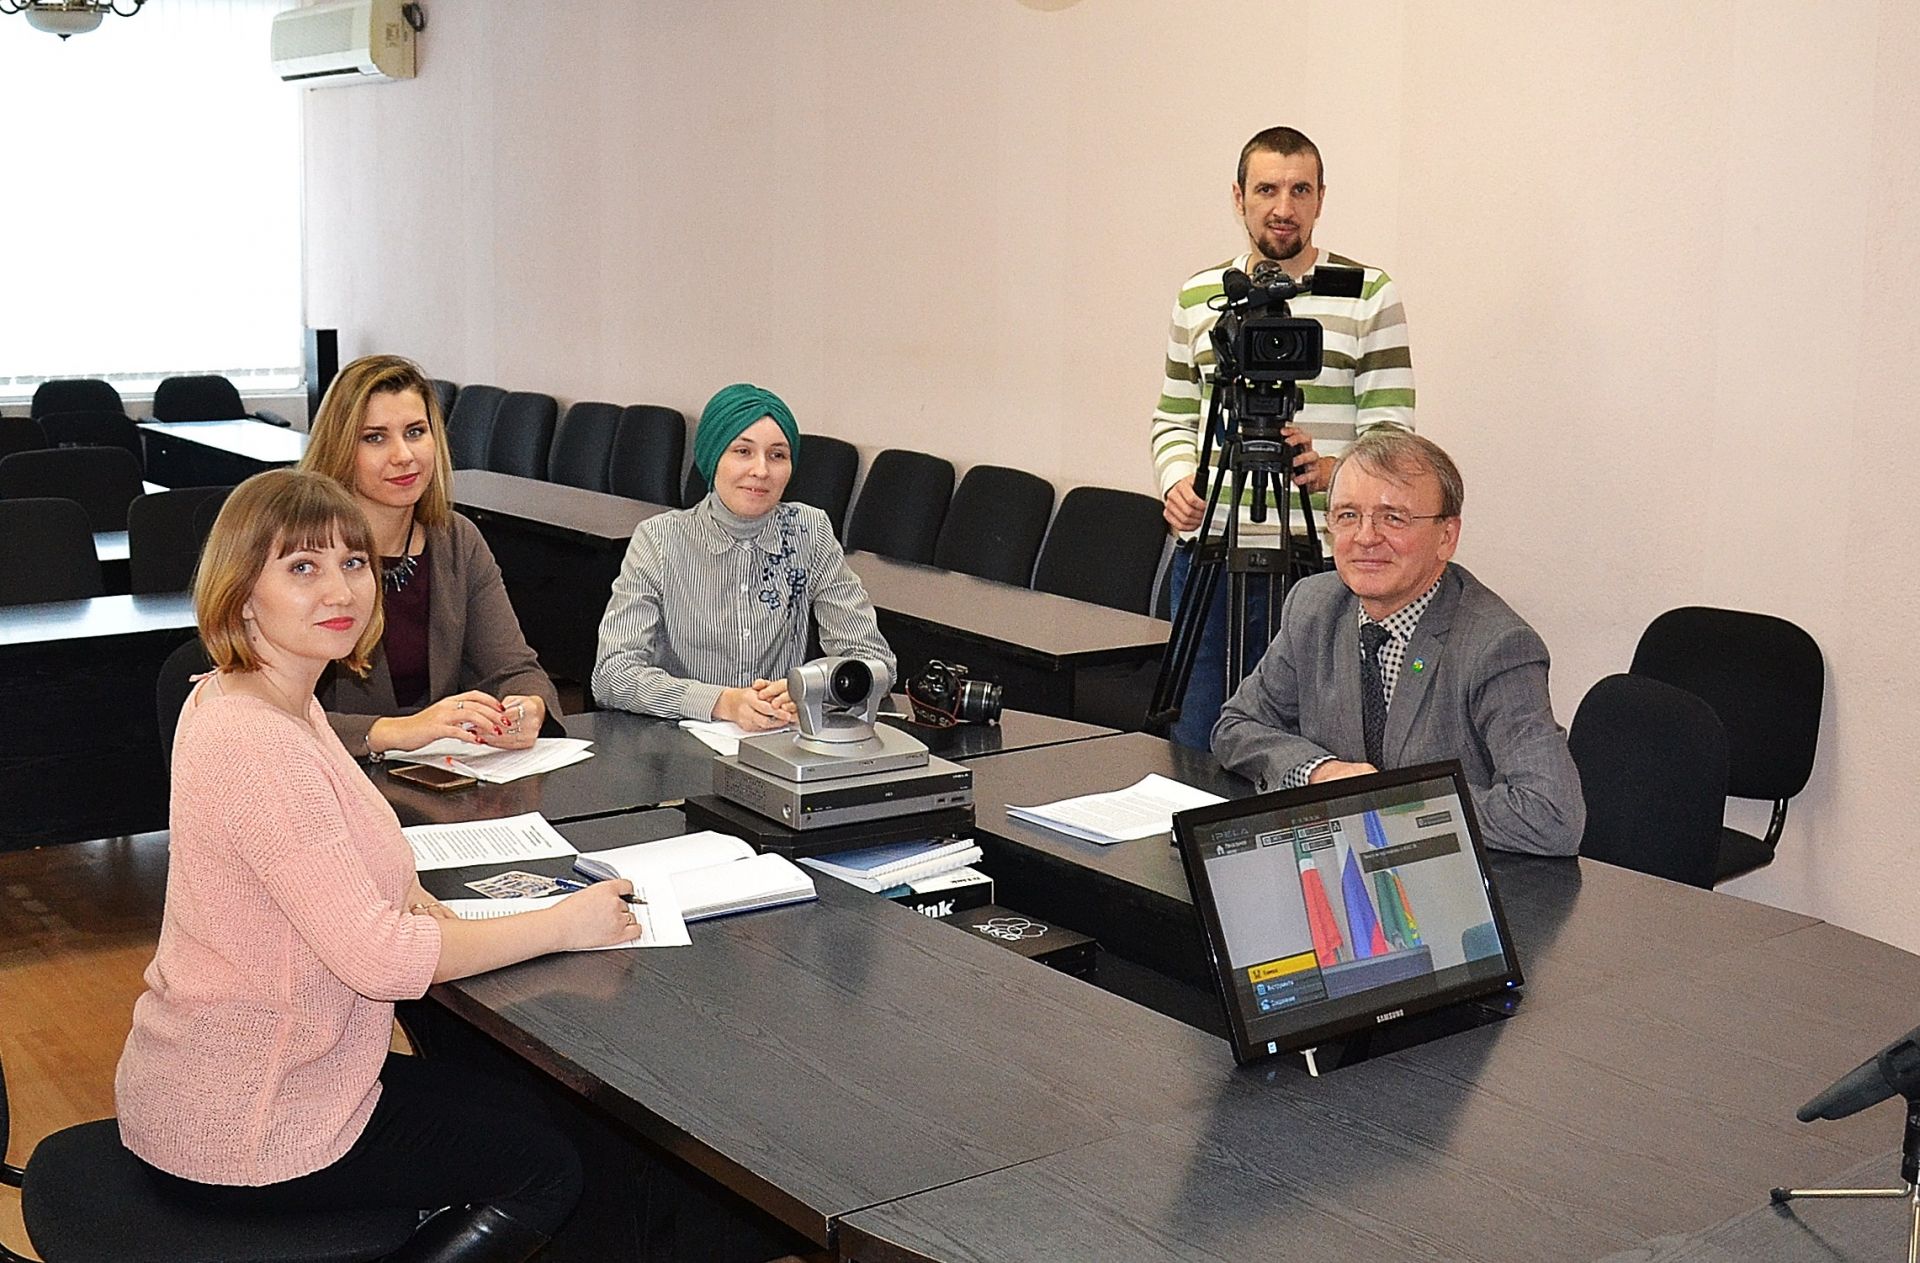 Глава Чистопольского района ответил на вопросы журналистов